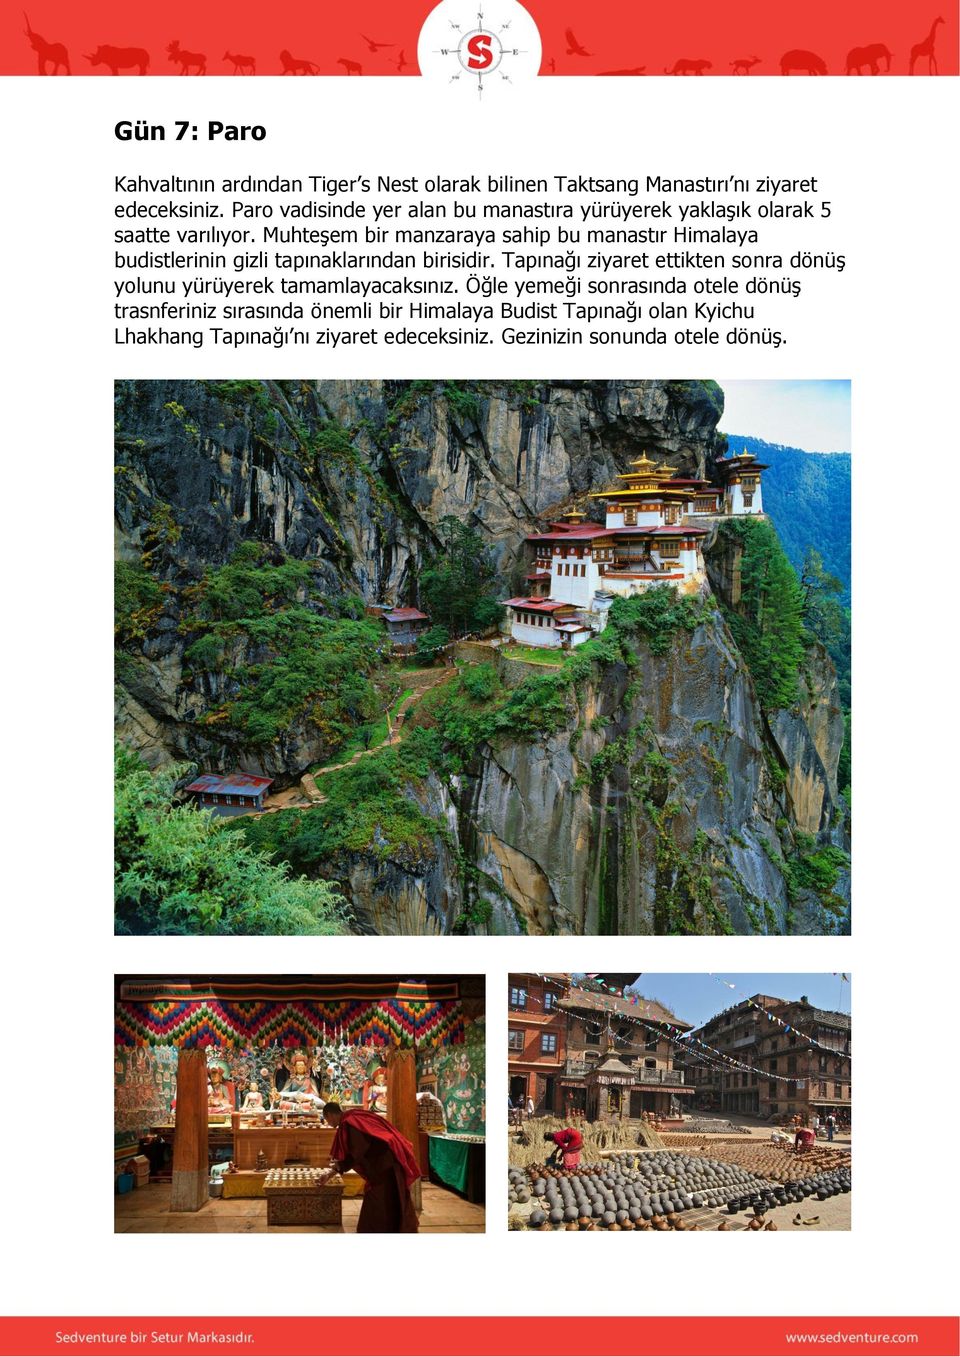 Muhteşem bir manzaraya sahip bu manastır Himalaya budistlerinin gizli tapınaklarından birisidir.